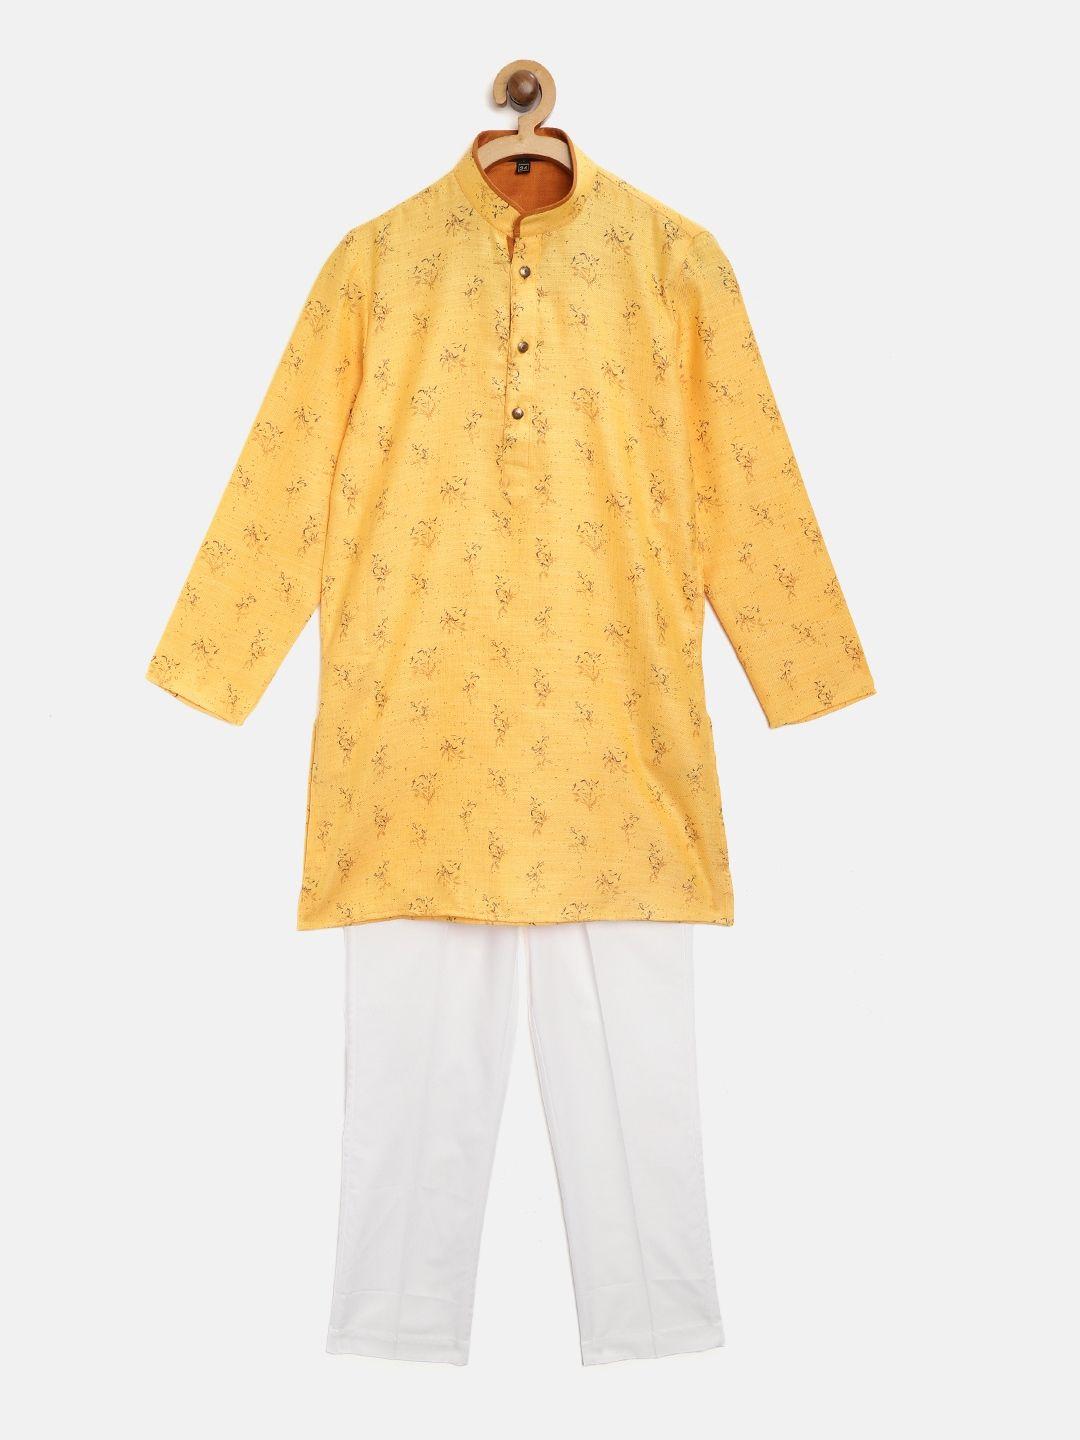 Readiprint Fashions Boys Mustard Yellow & White Printed Kurta with Pyjamas